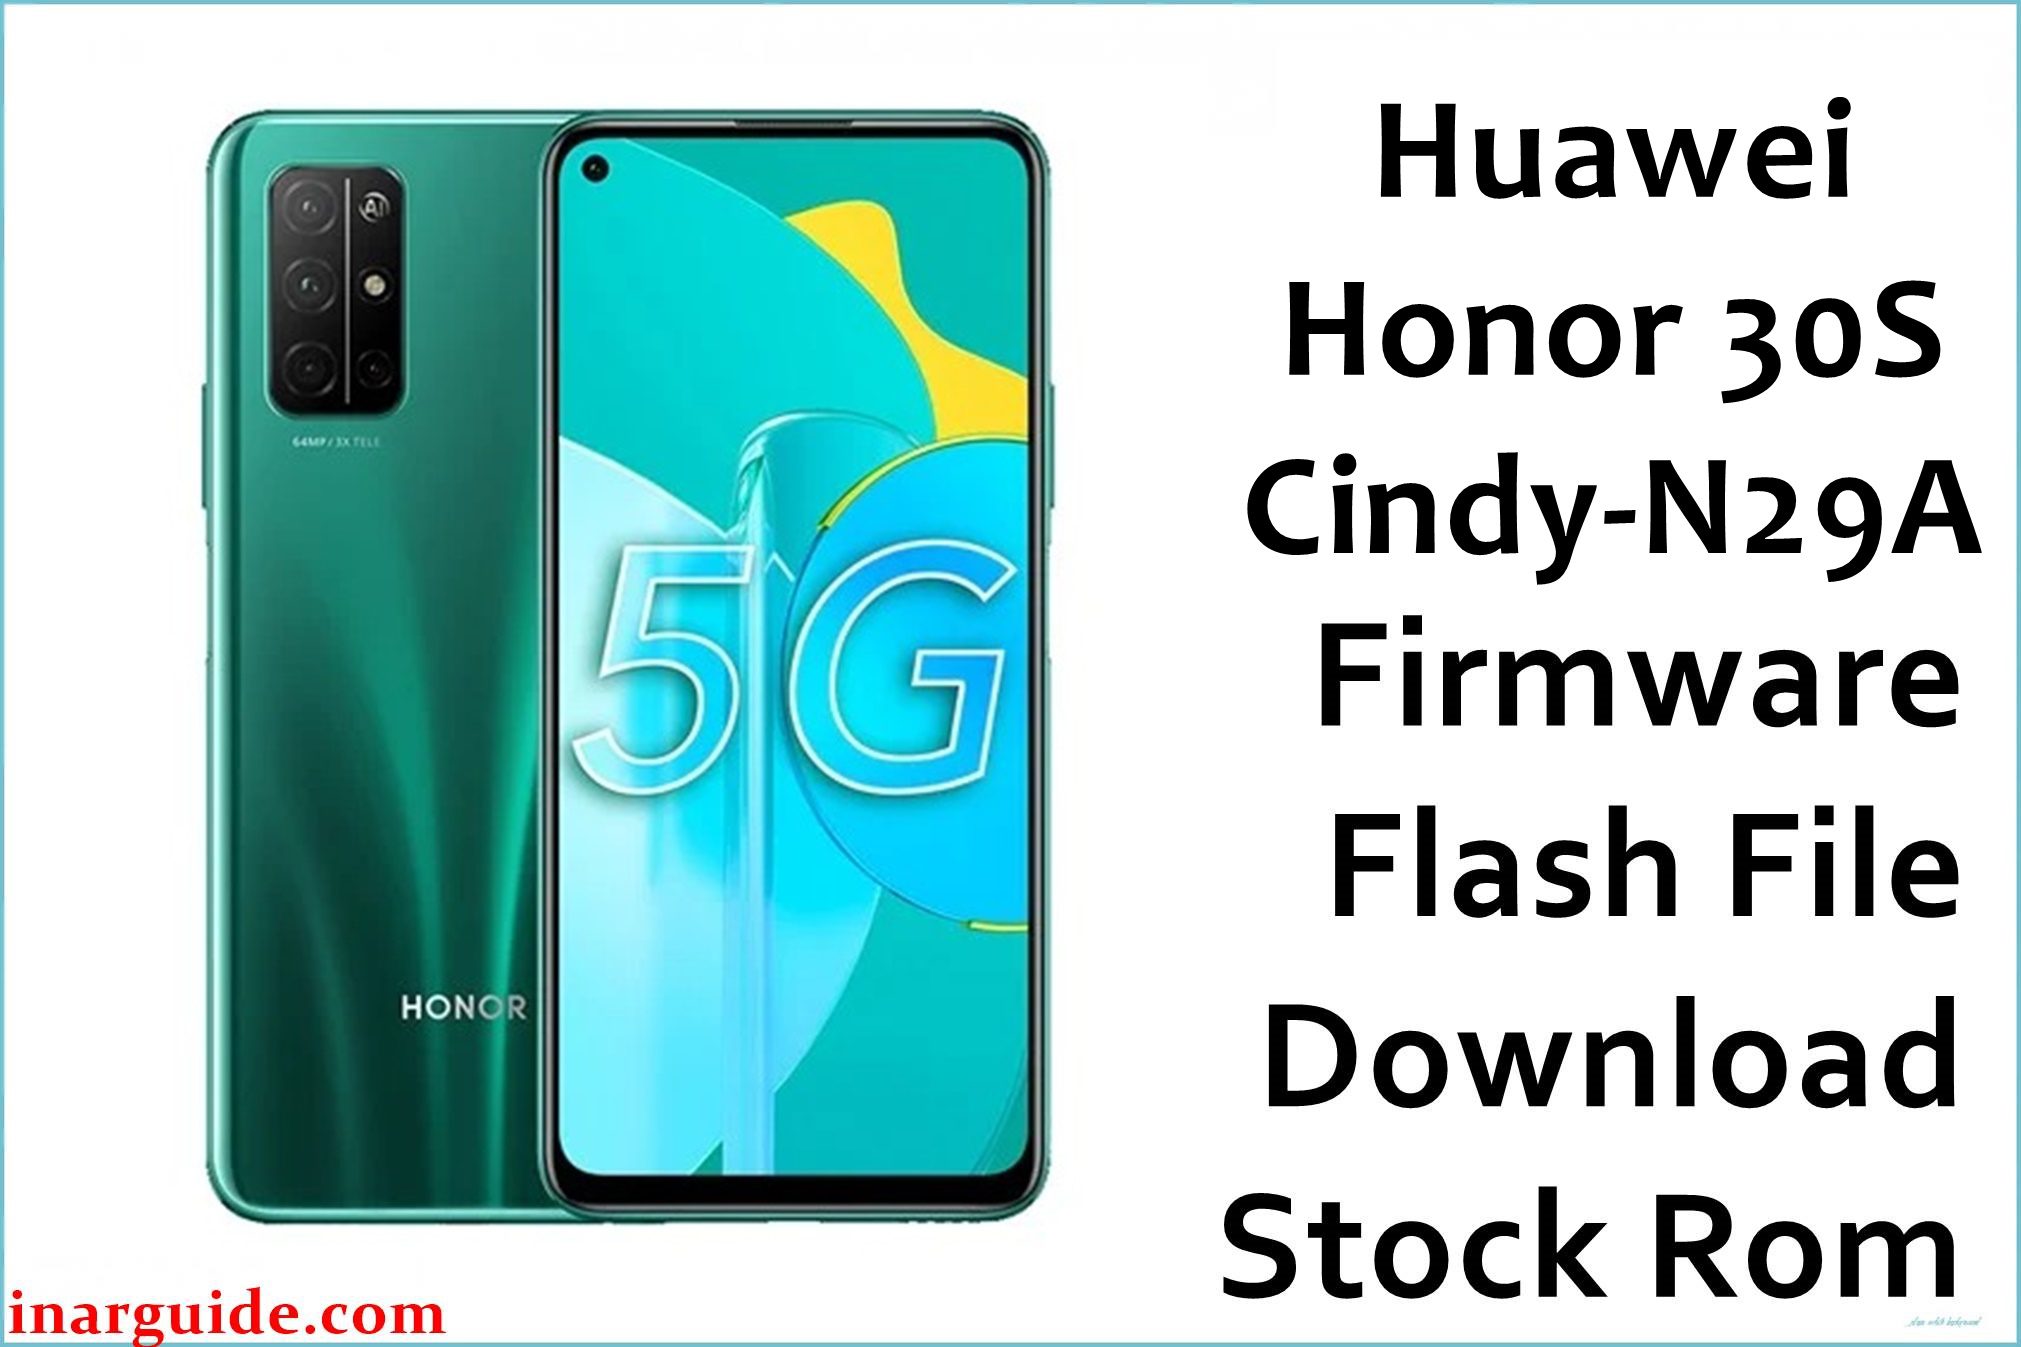 Huawei Honor 30S Cindy N29A